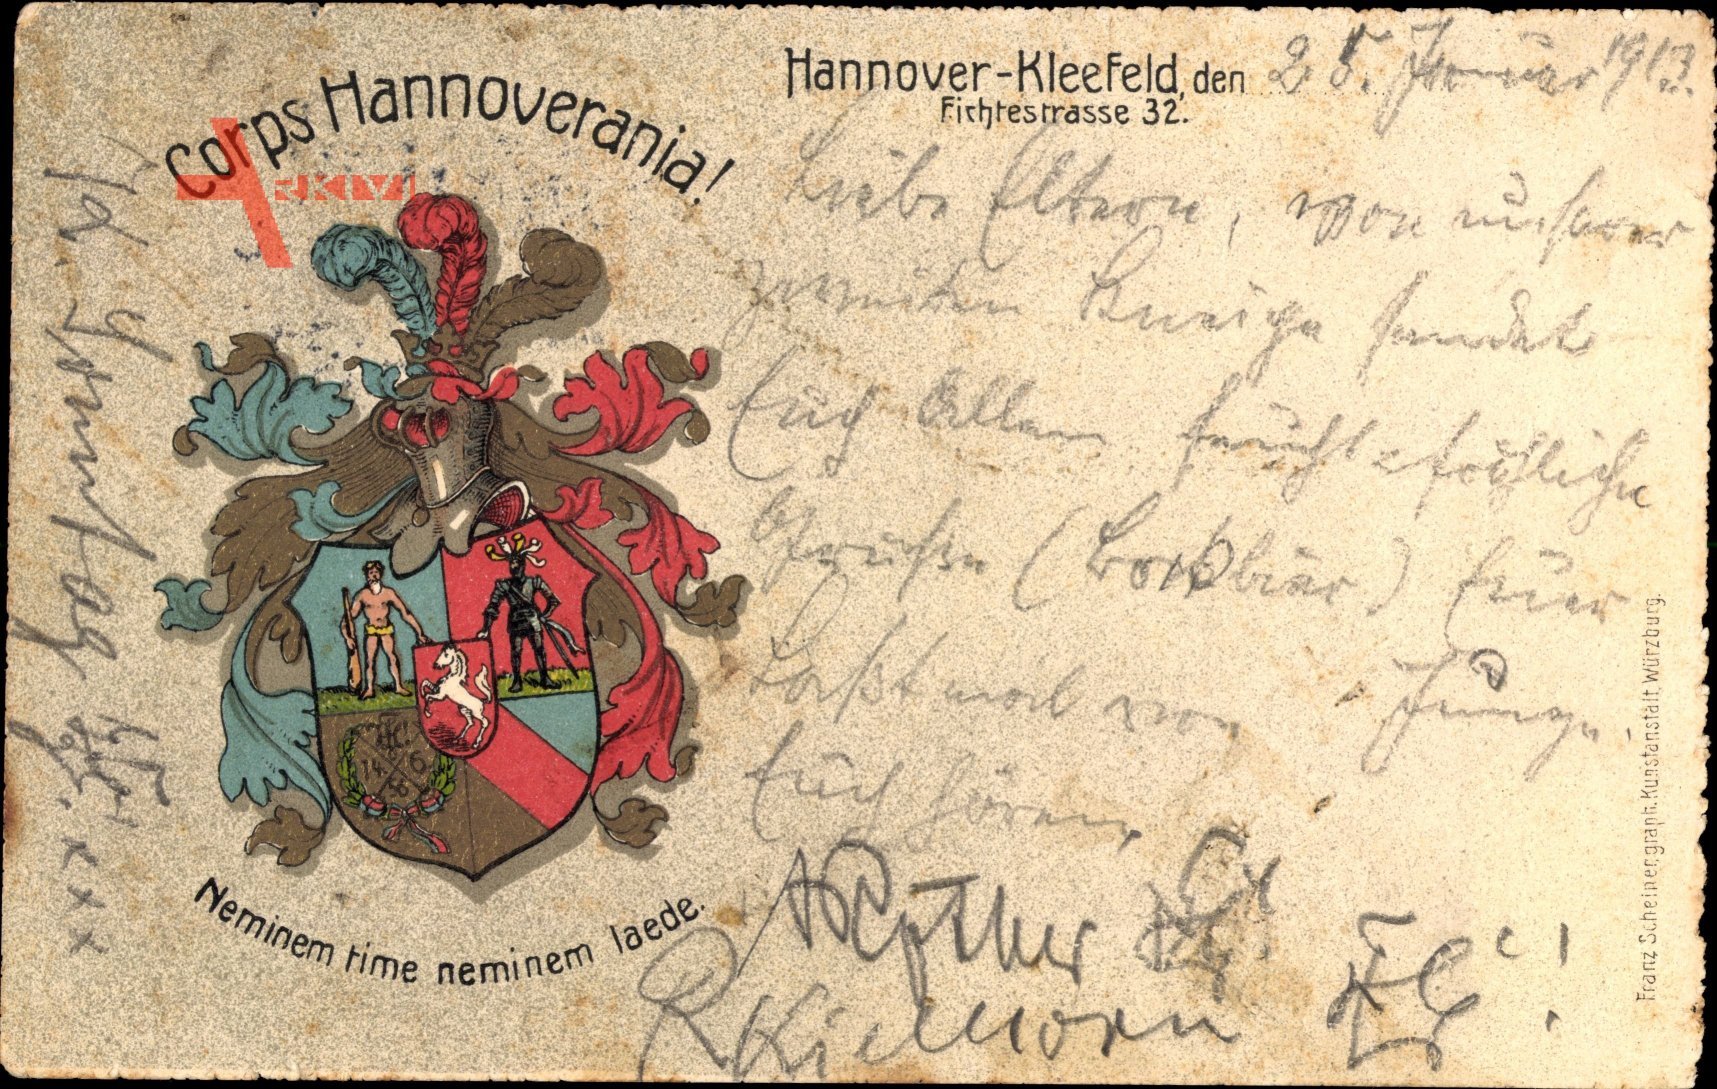 Studentika Kleefeld Hannover, Corps Hannoverania